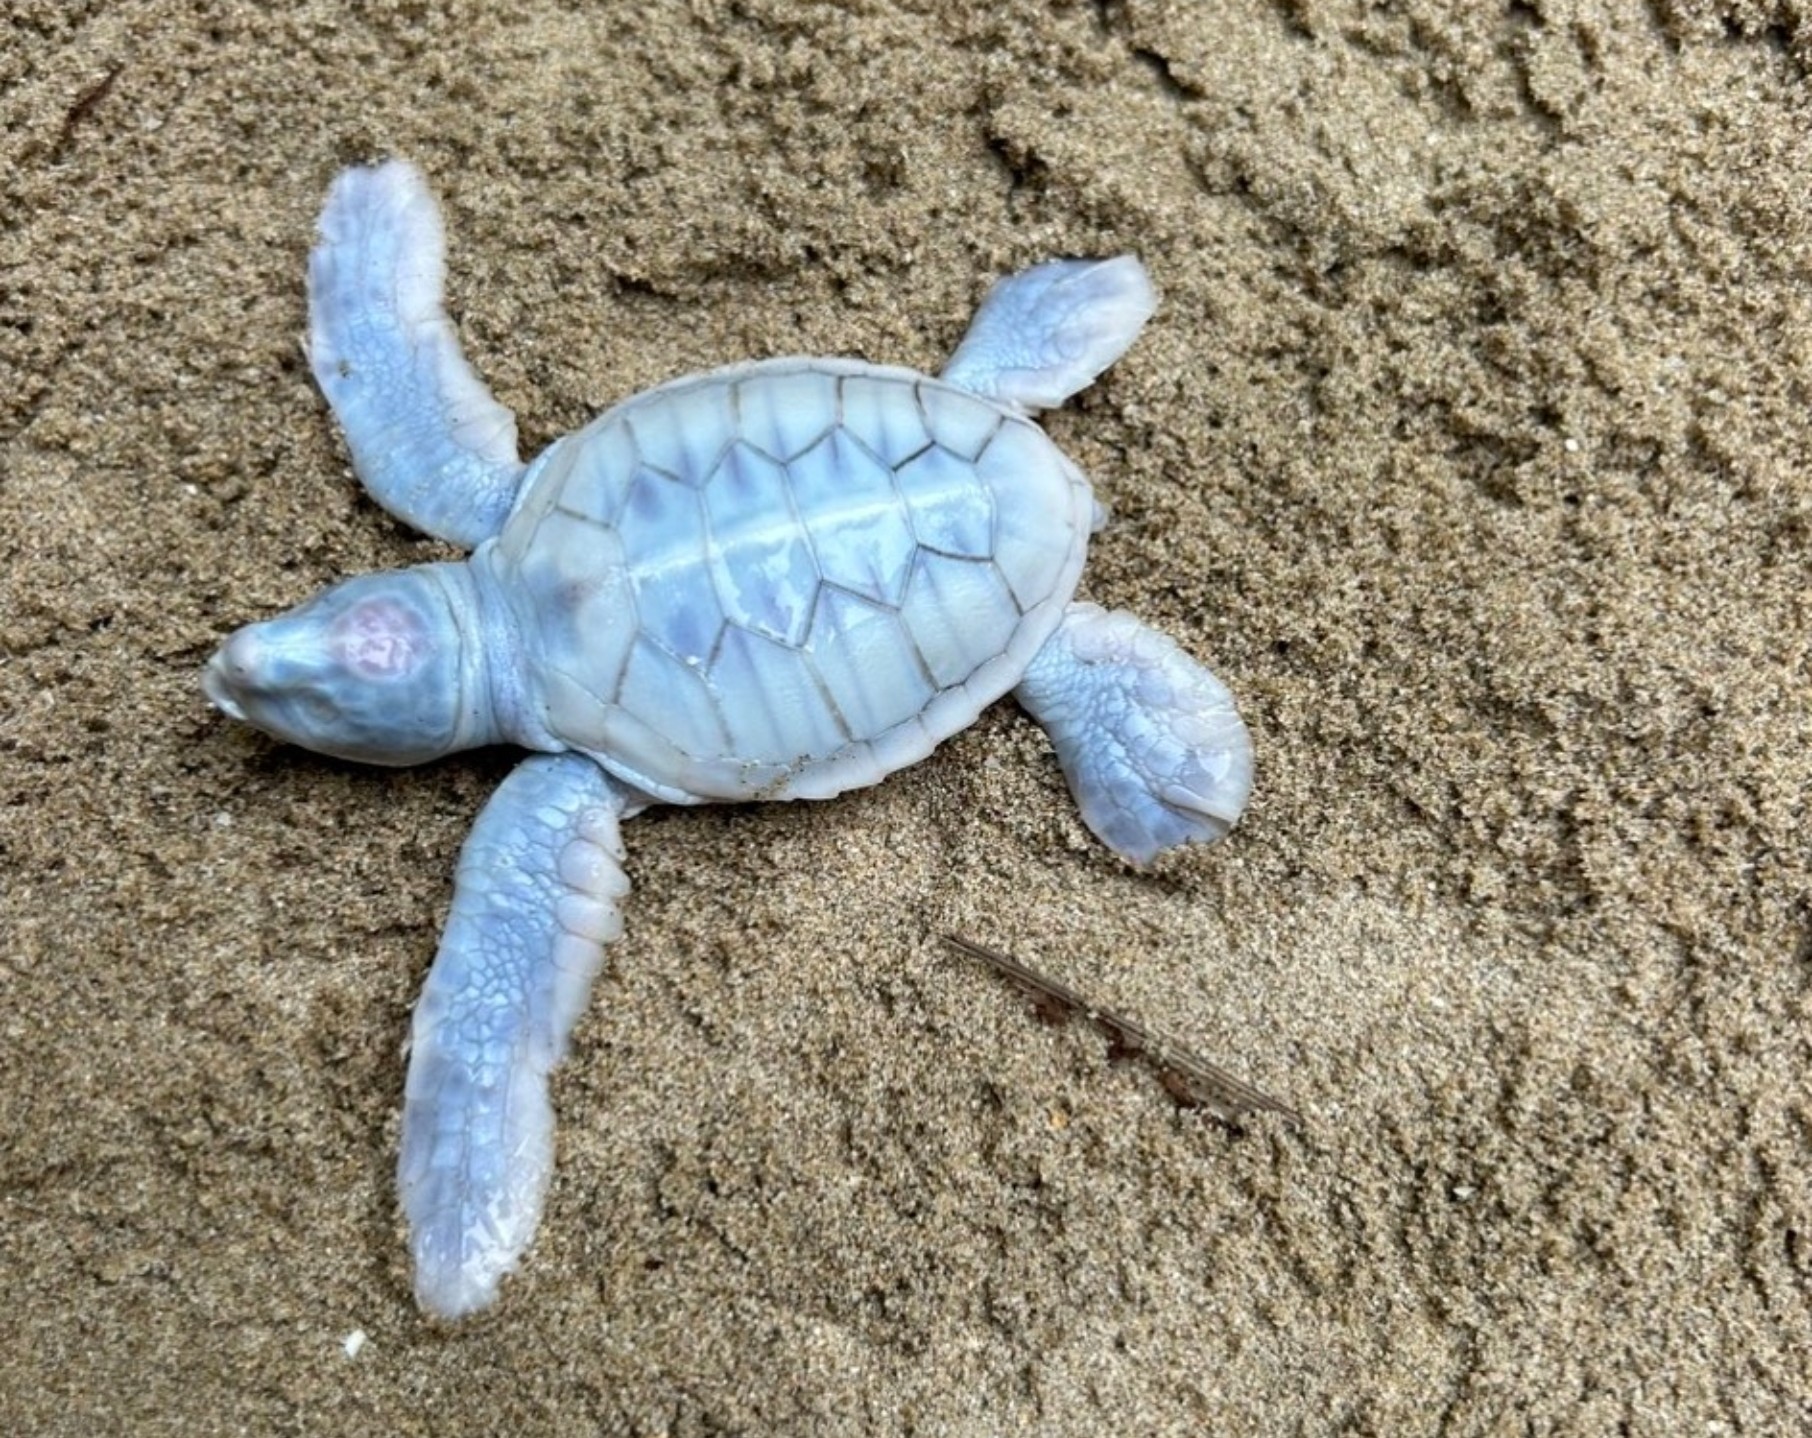 Rùa biển bạch tạng quý hiếm chào đời tại Côn Đảo - Ảnh 1.